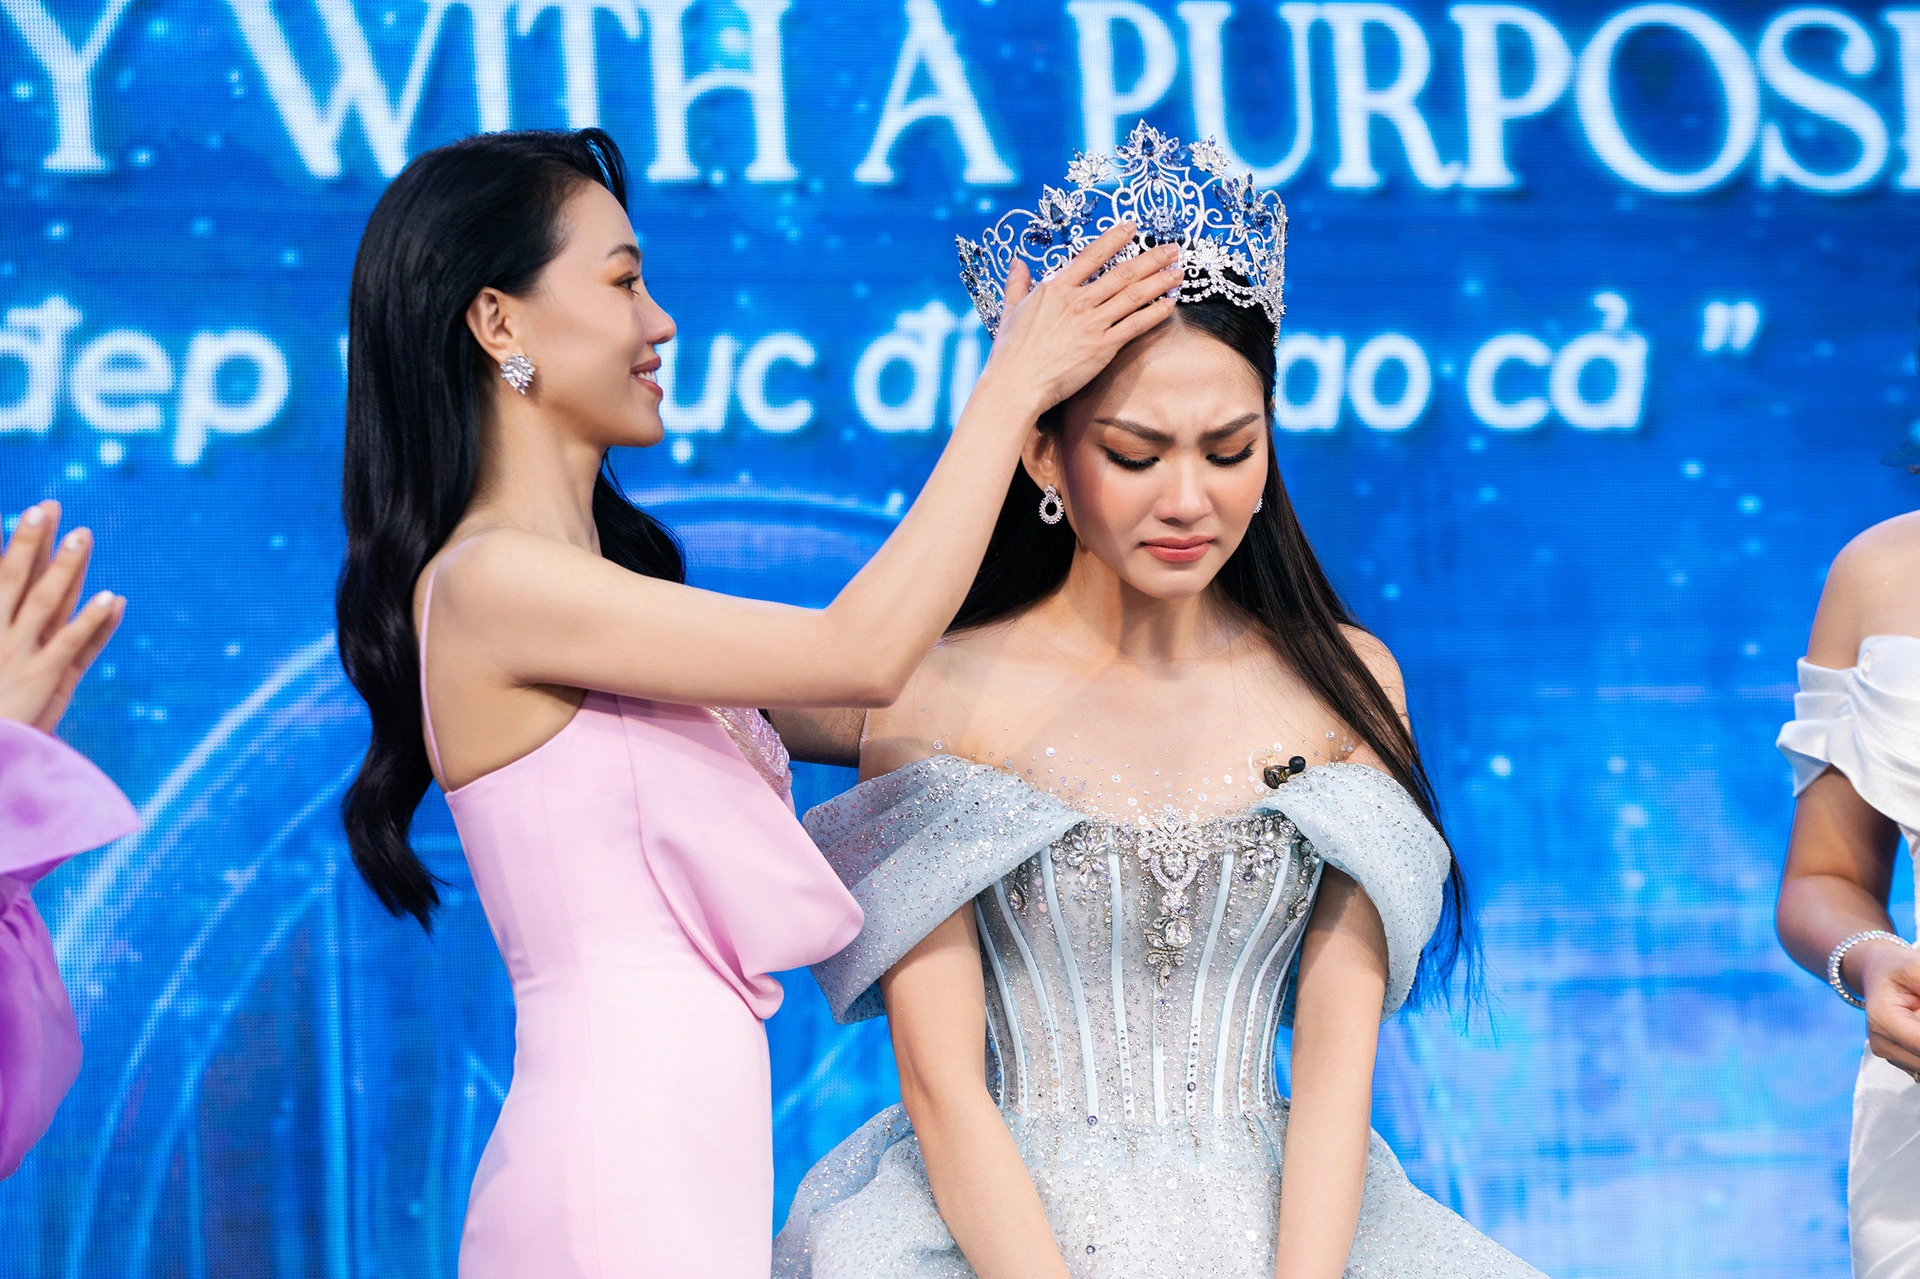 Hoa hậu Mai Phương bán vương miện với giá 3 tỷ đồng - 1